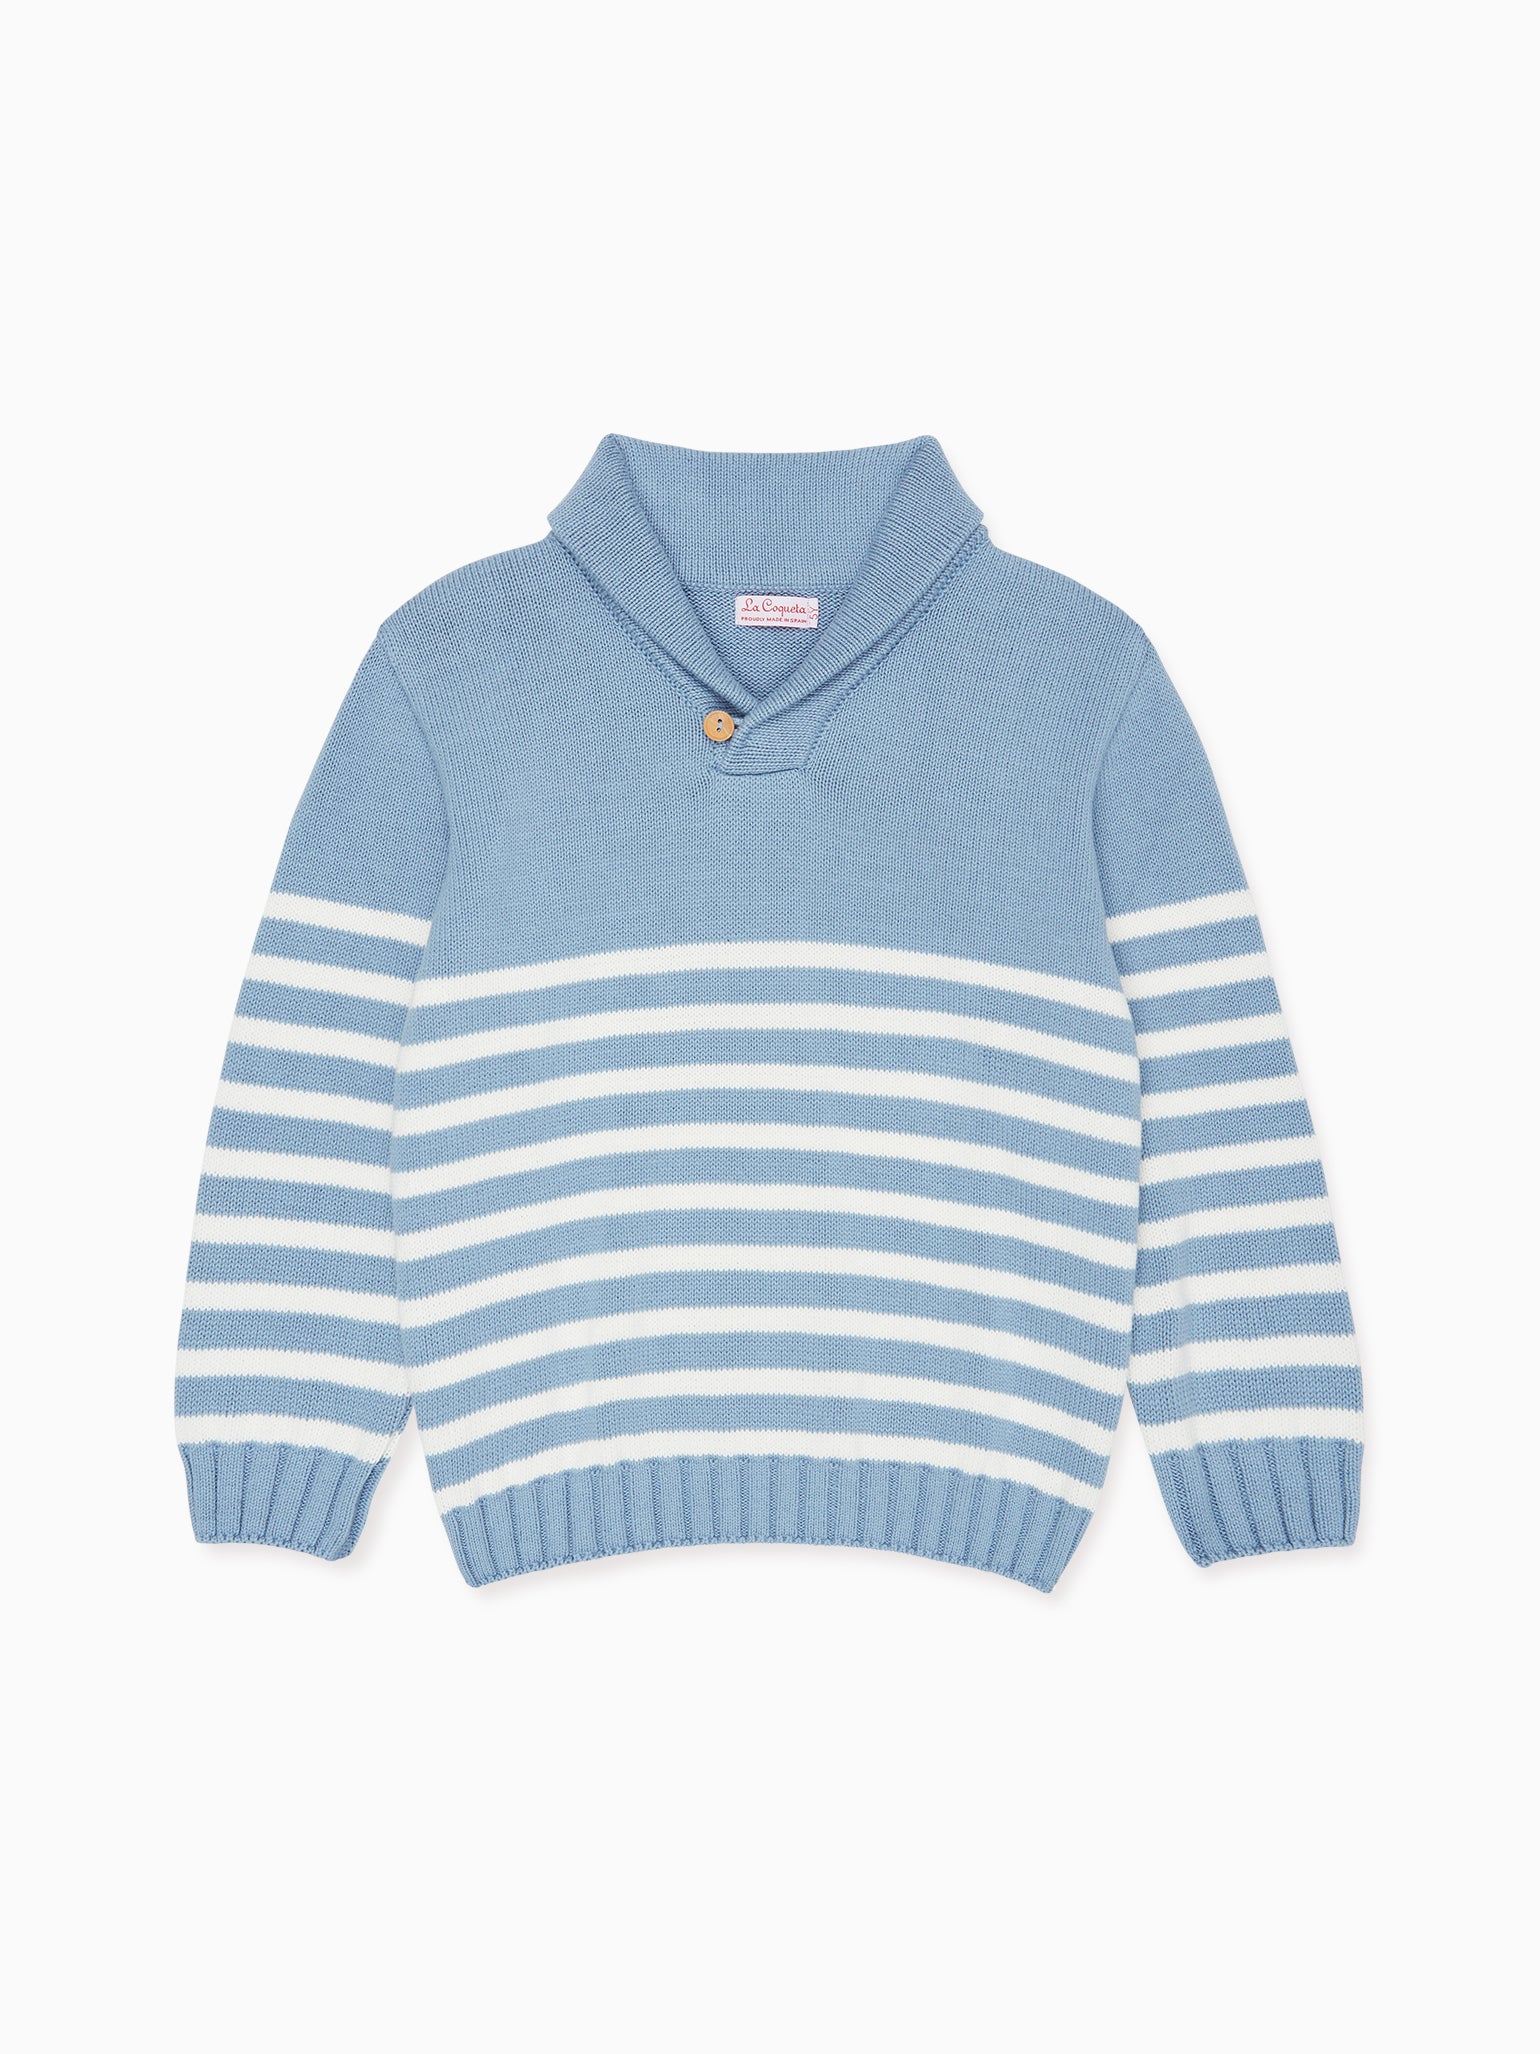 Blue Stripe Goyo Boy Cotton Sweater